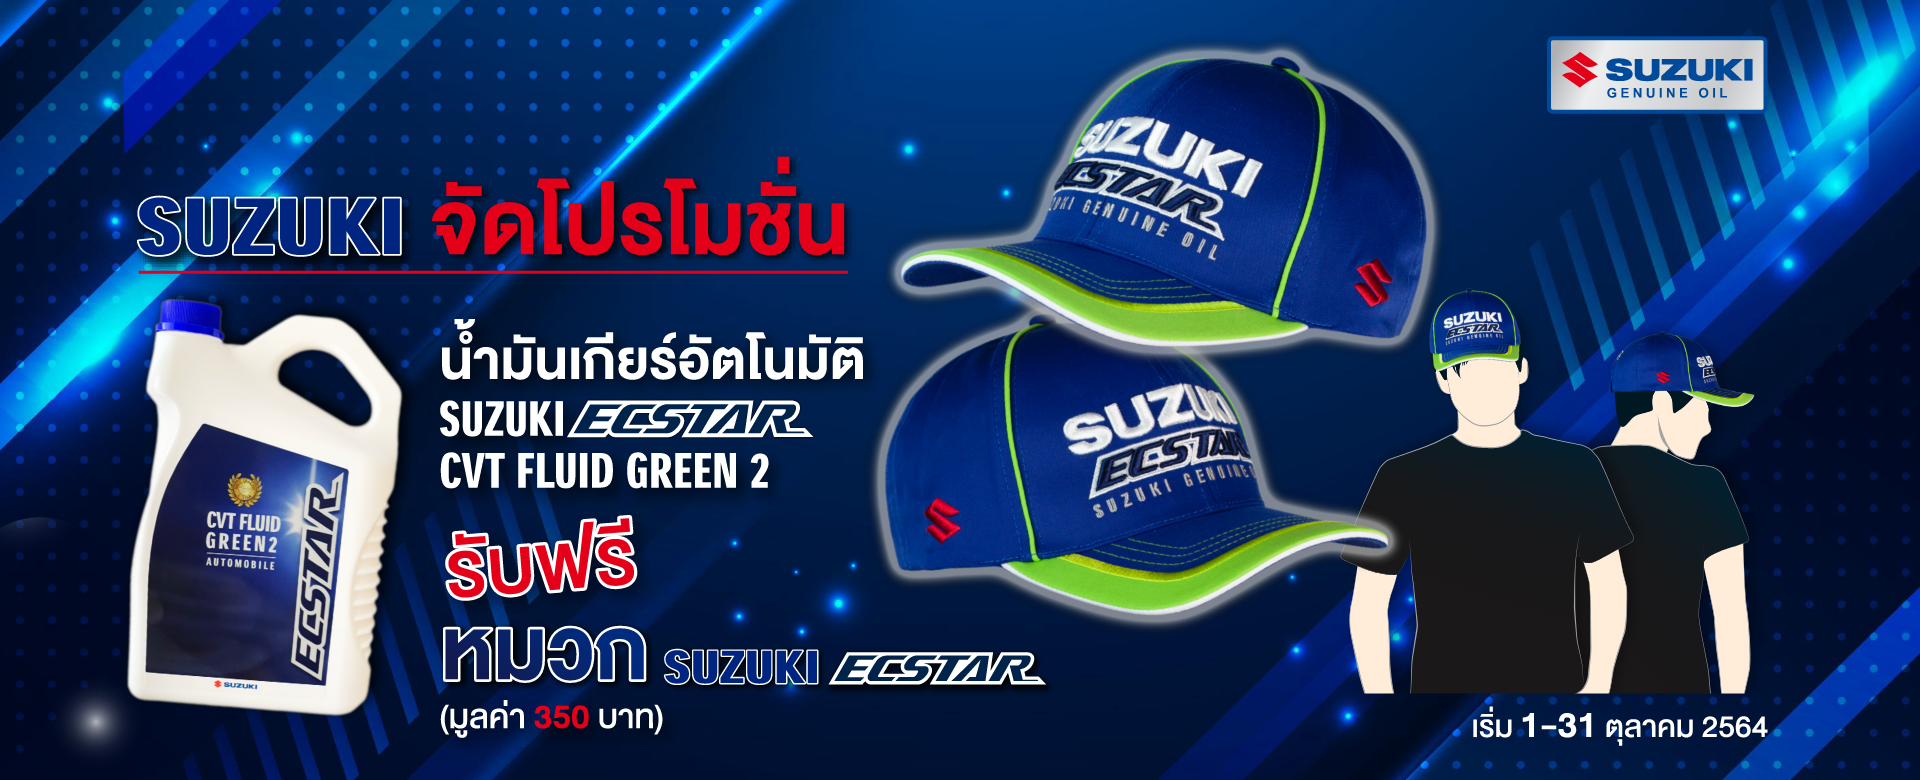 ซูซูกิจัดโปรโมชั่นแถมฟรี หมวก SUZUKI ECSTAR เมื่อซื้อน้ำมันเกียร์อัตโนมัติที่ซูซูกิทั่วประเทศ Promotion